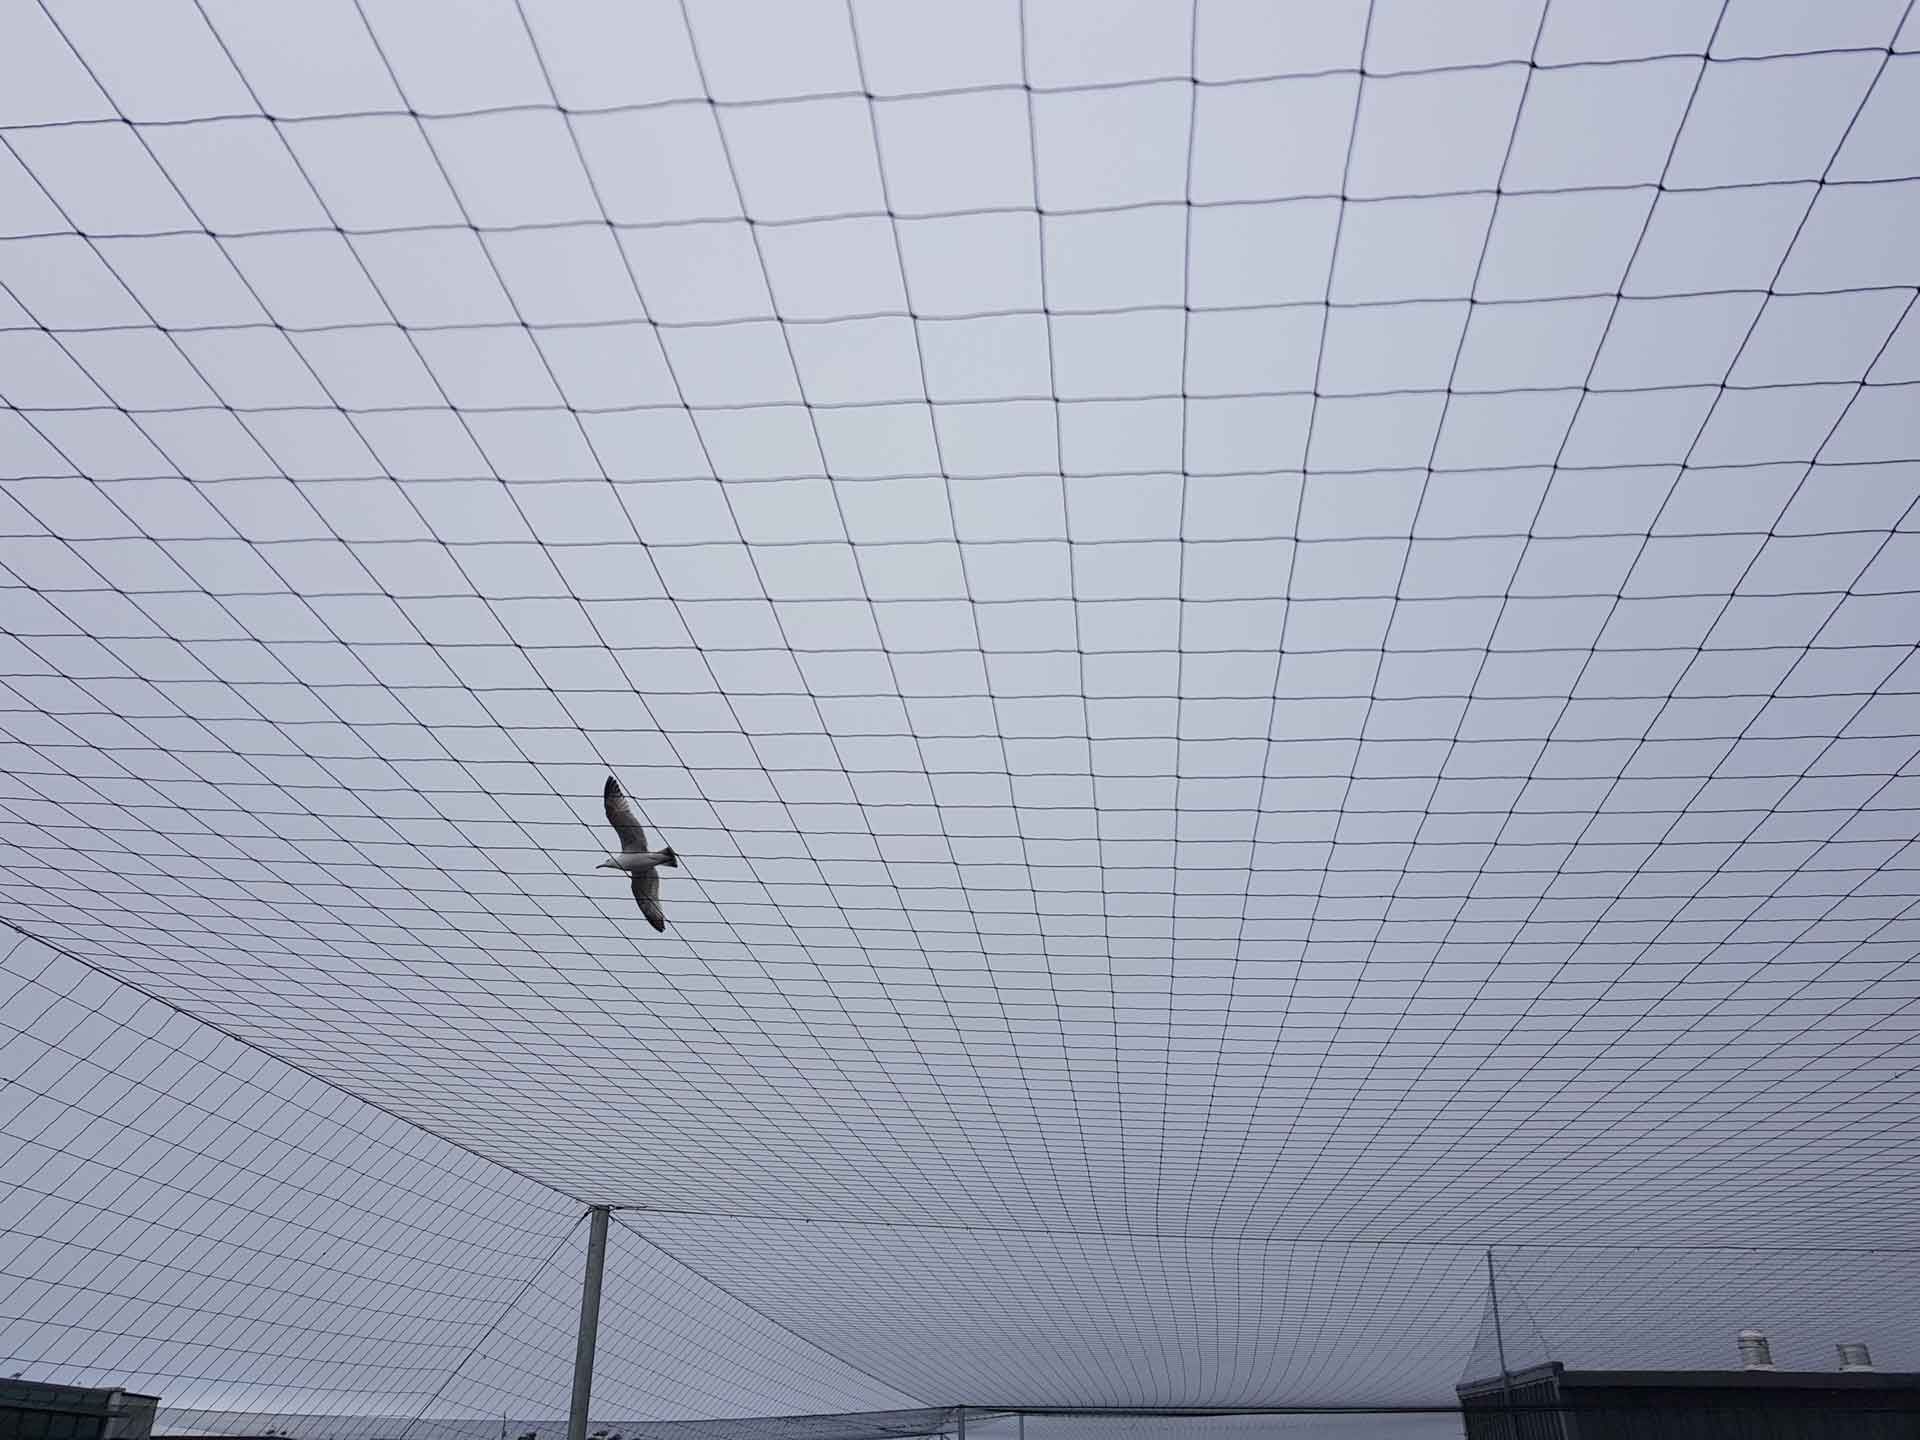 Bird netting installed outside